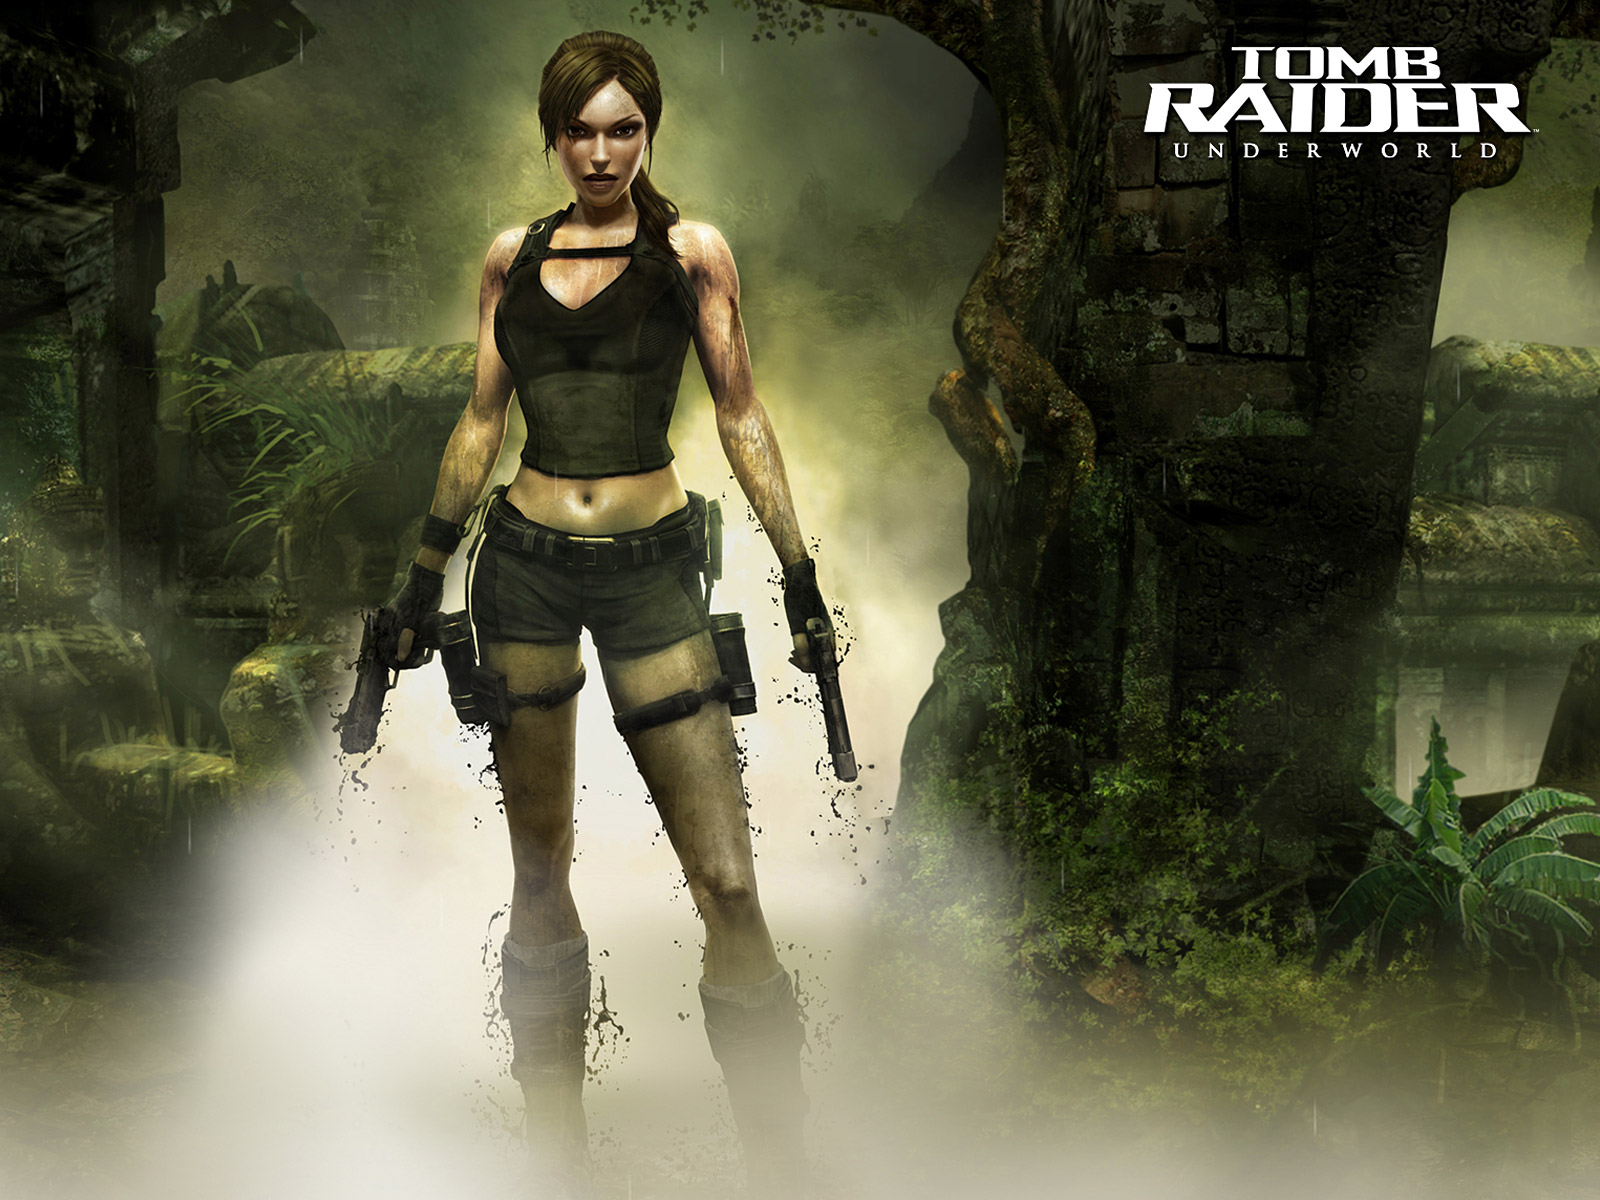 HQ Tomb Raider: Underworld Wallpapers | File 400.48Kb